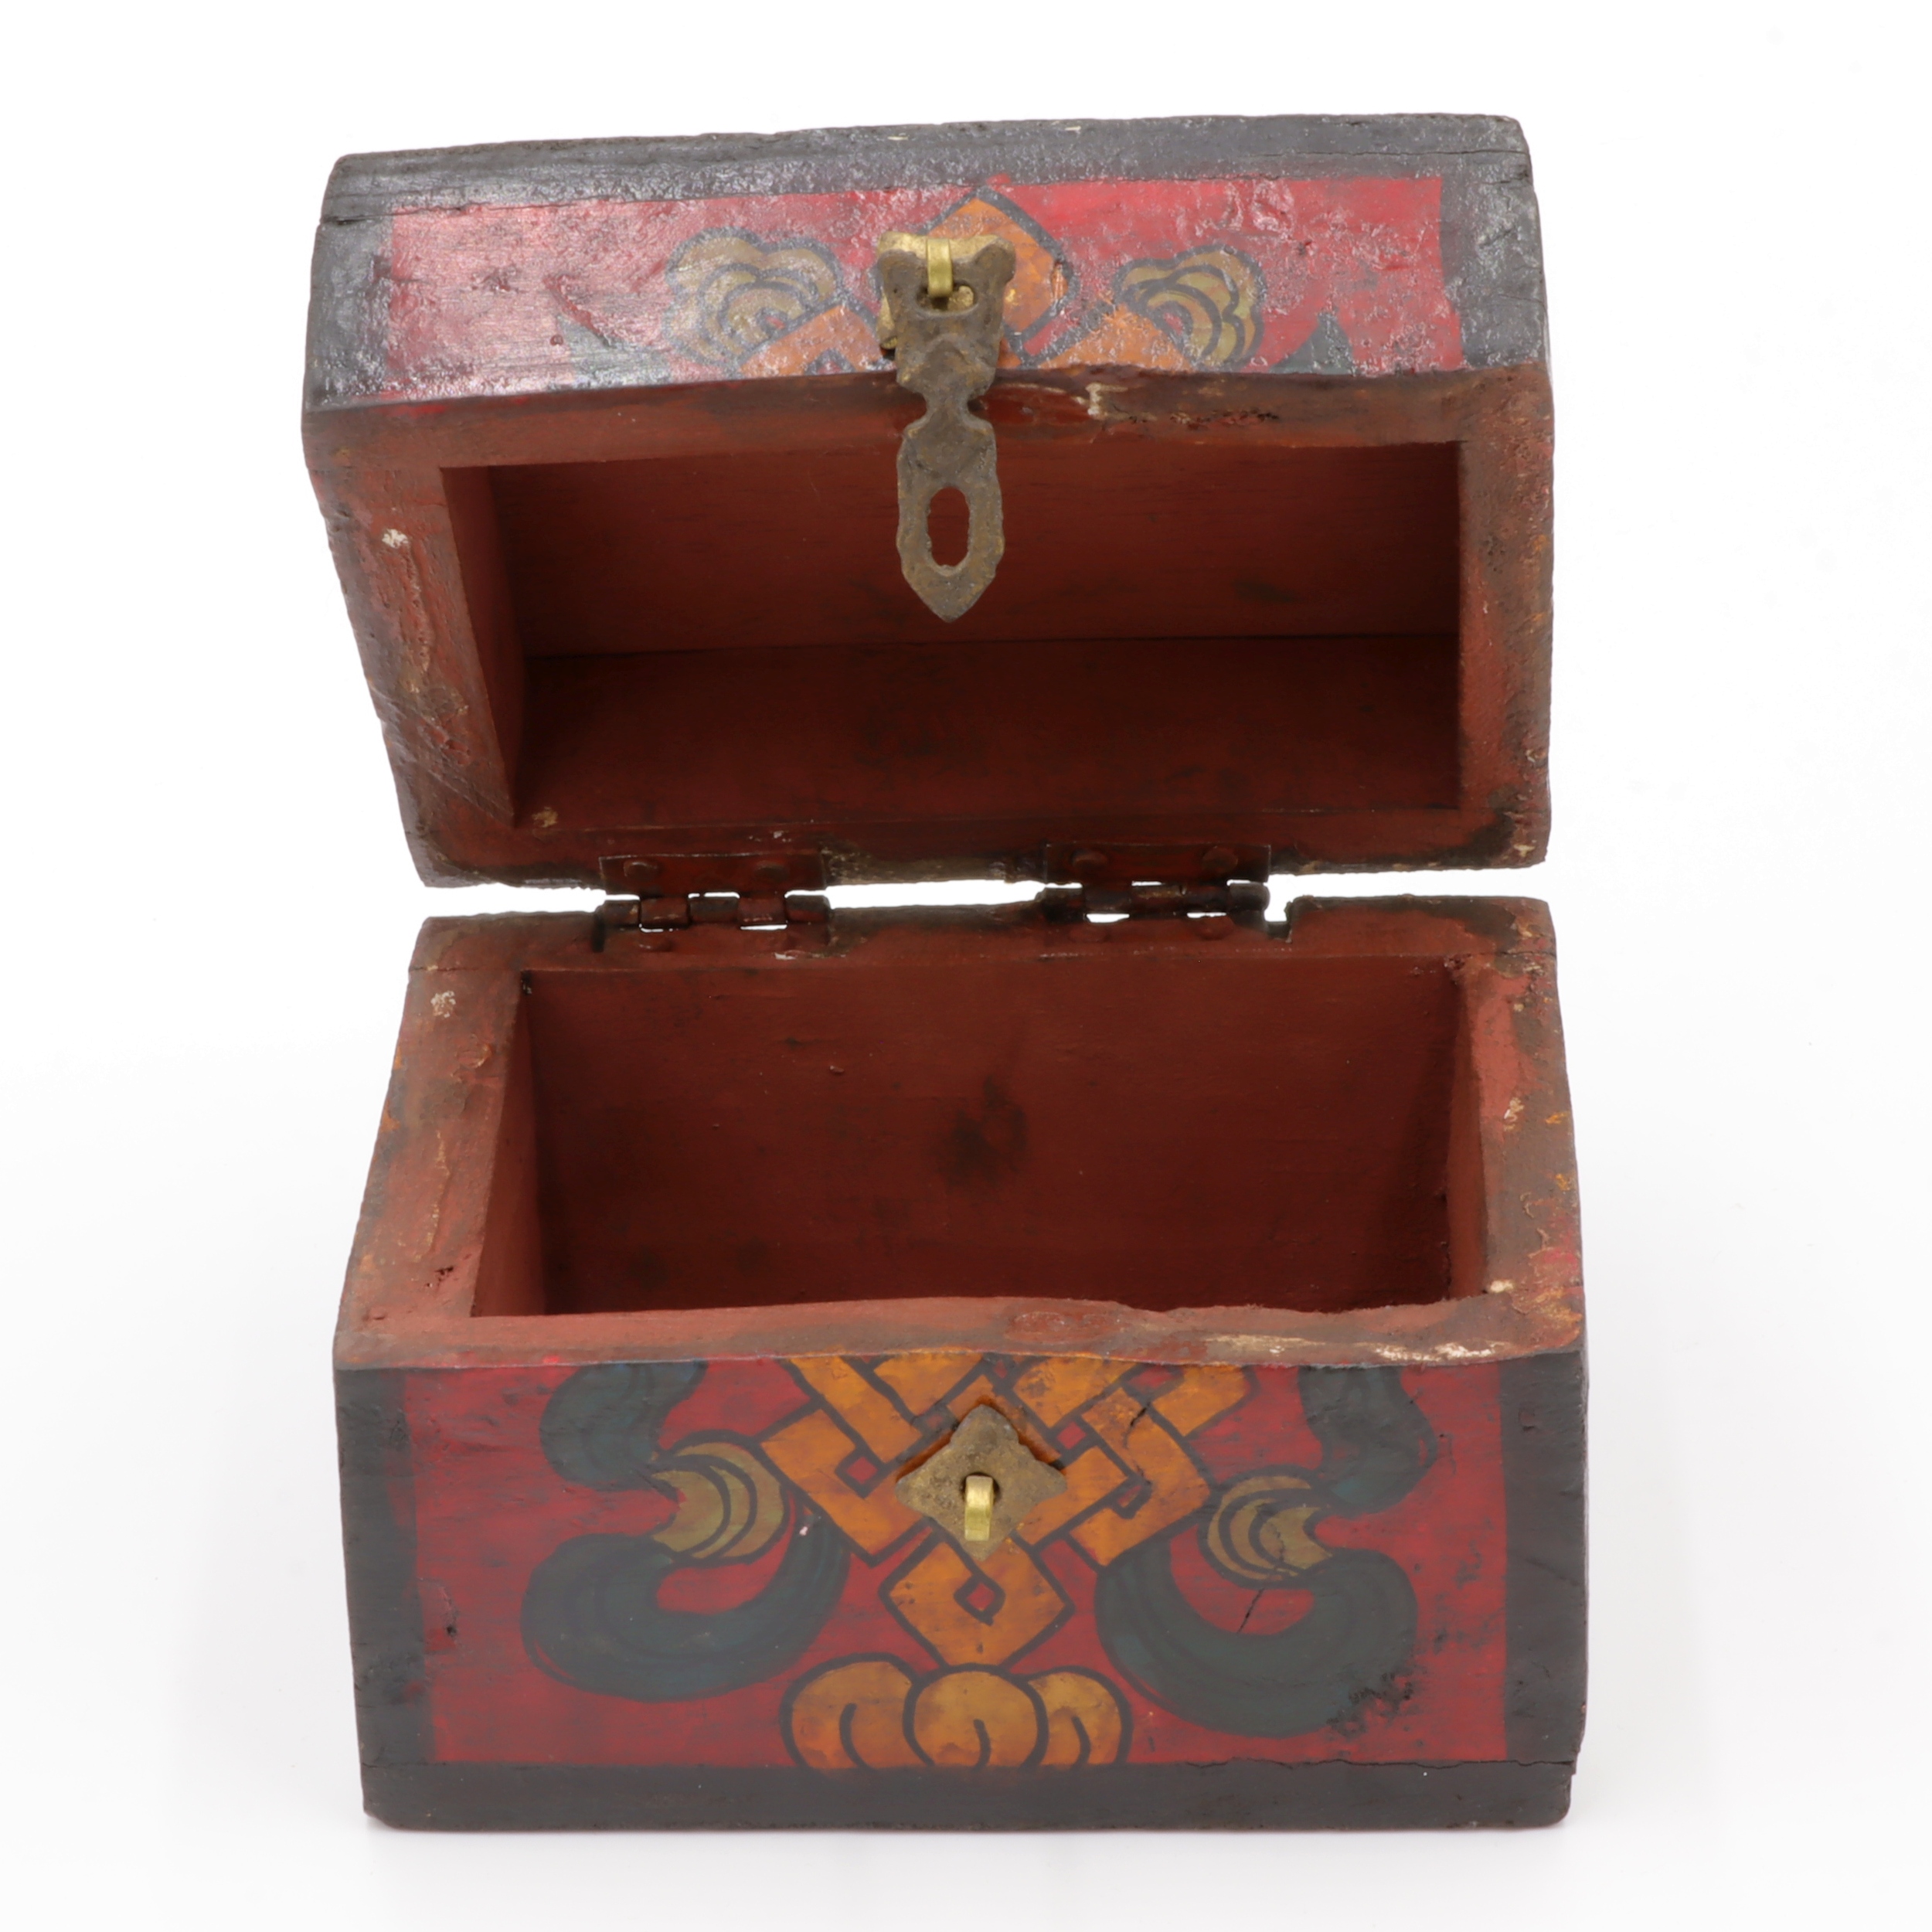 Handbemalte Kiste aus Holz - Endlosknoten - Truhen Design - typisch nepalesiche Farben - dunkel - fair gehandelt aus Nepal